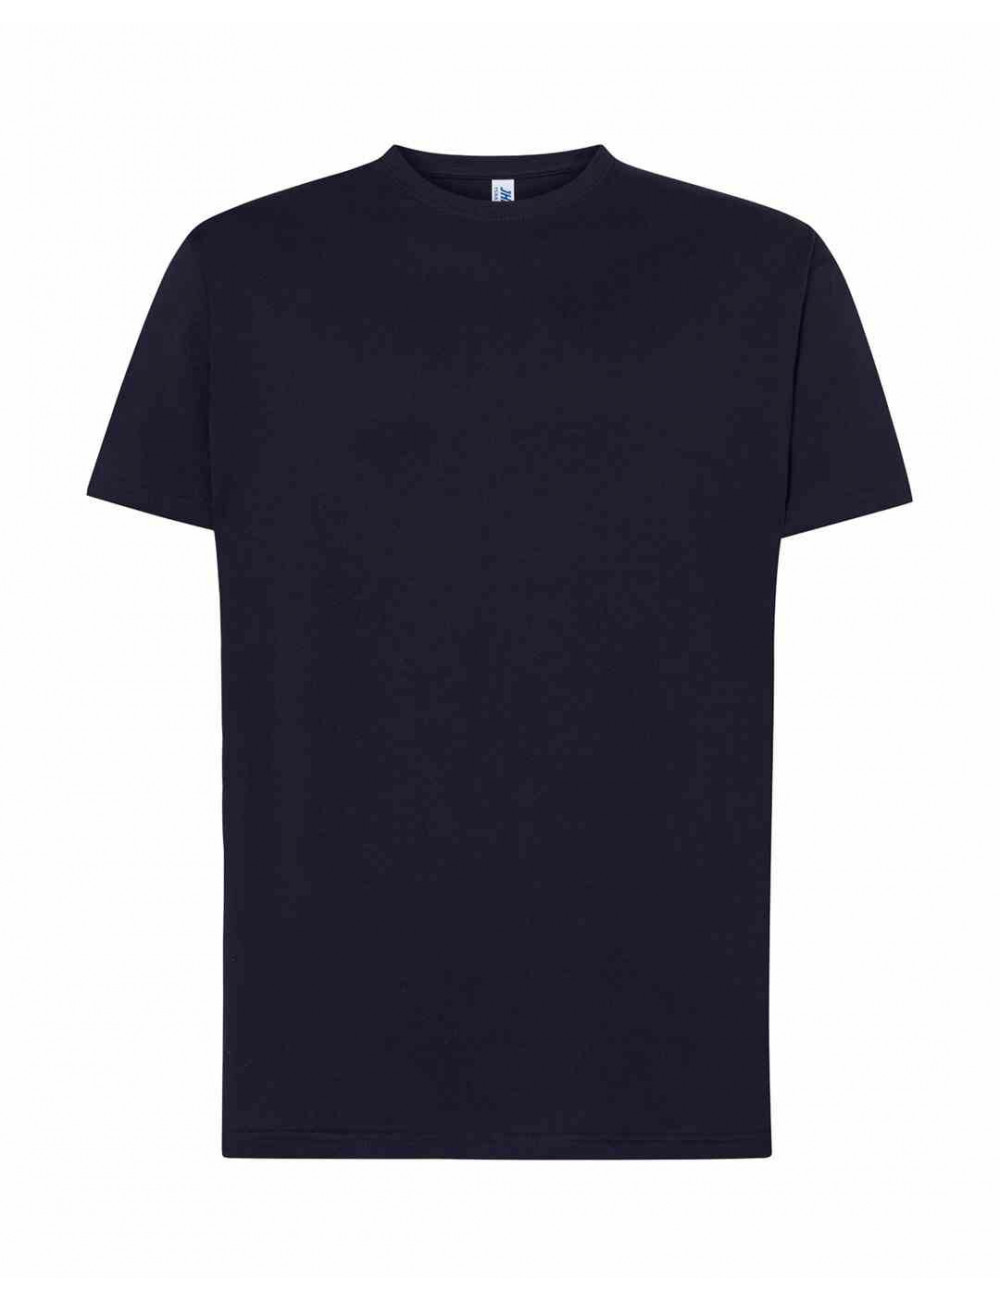 Koszulka męska ts ocean t-shirt 145 g ny - navy Jhk